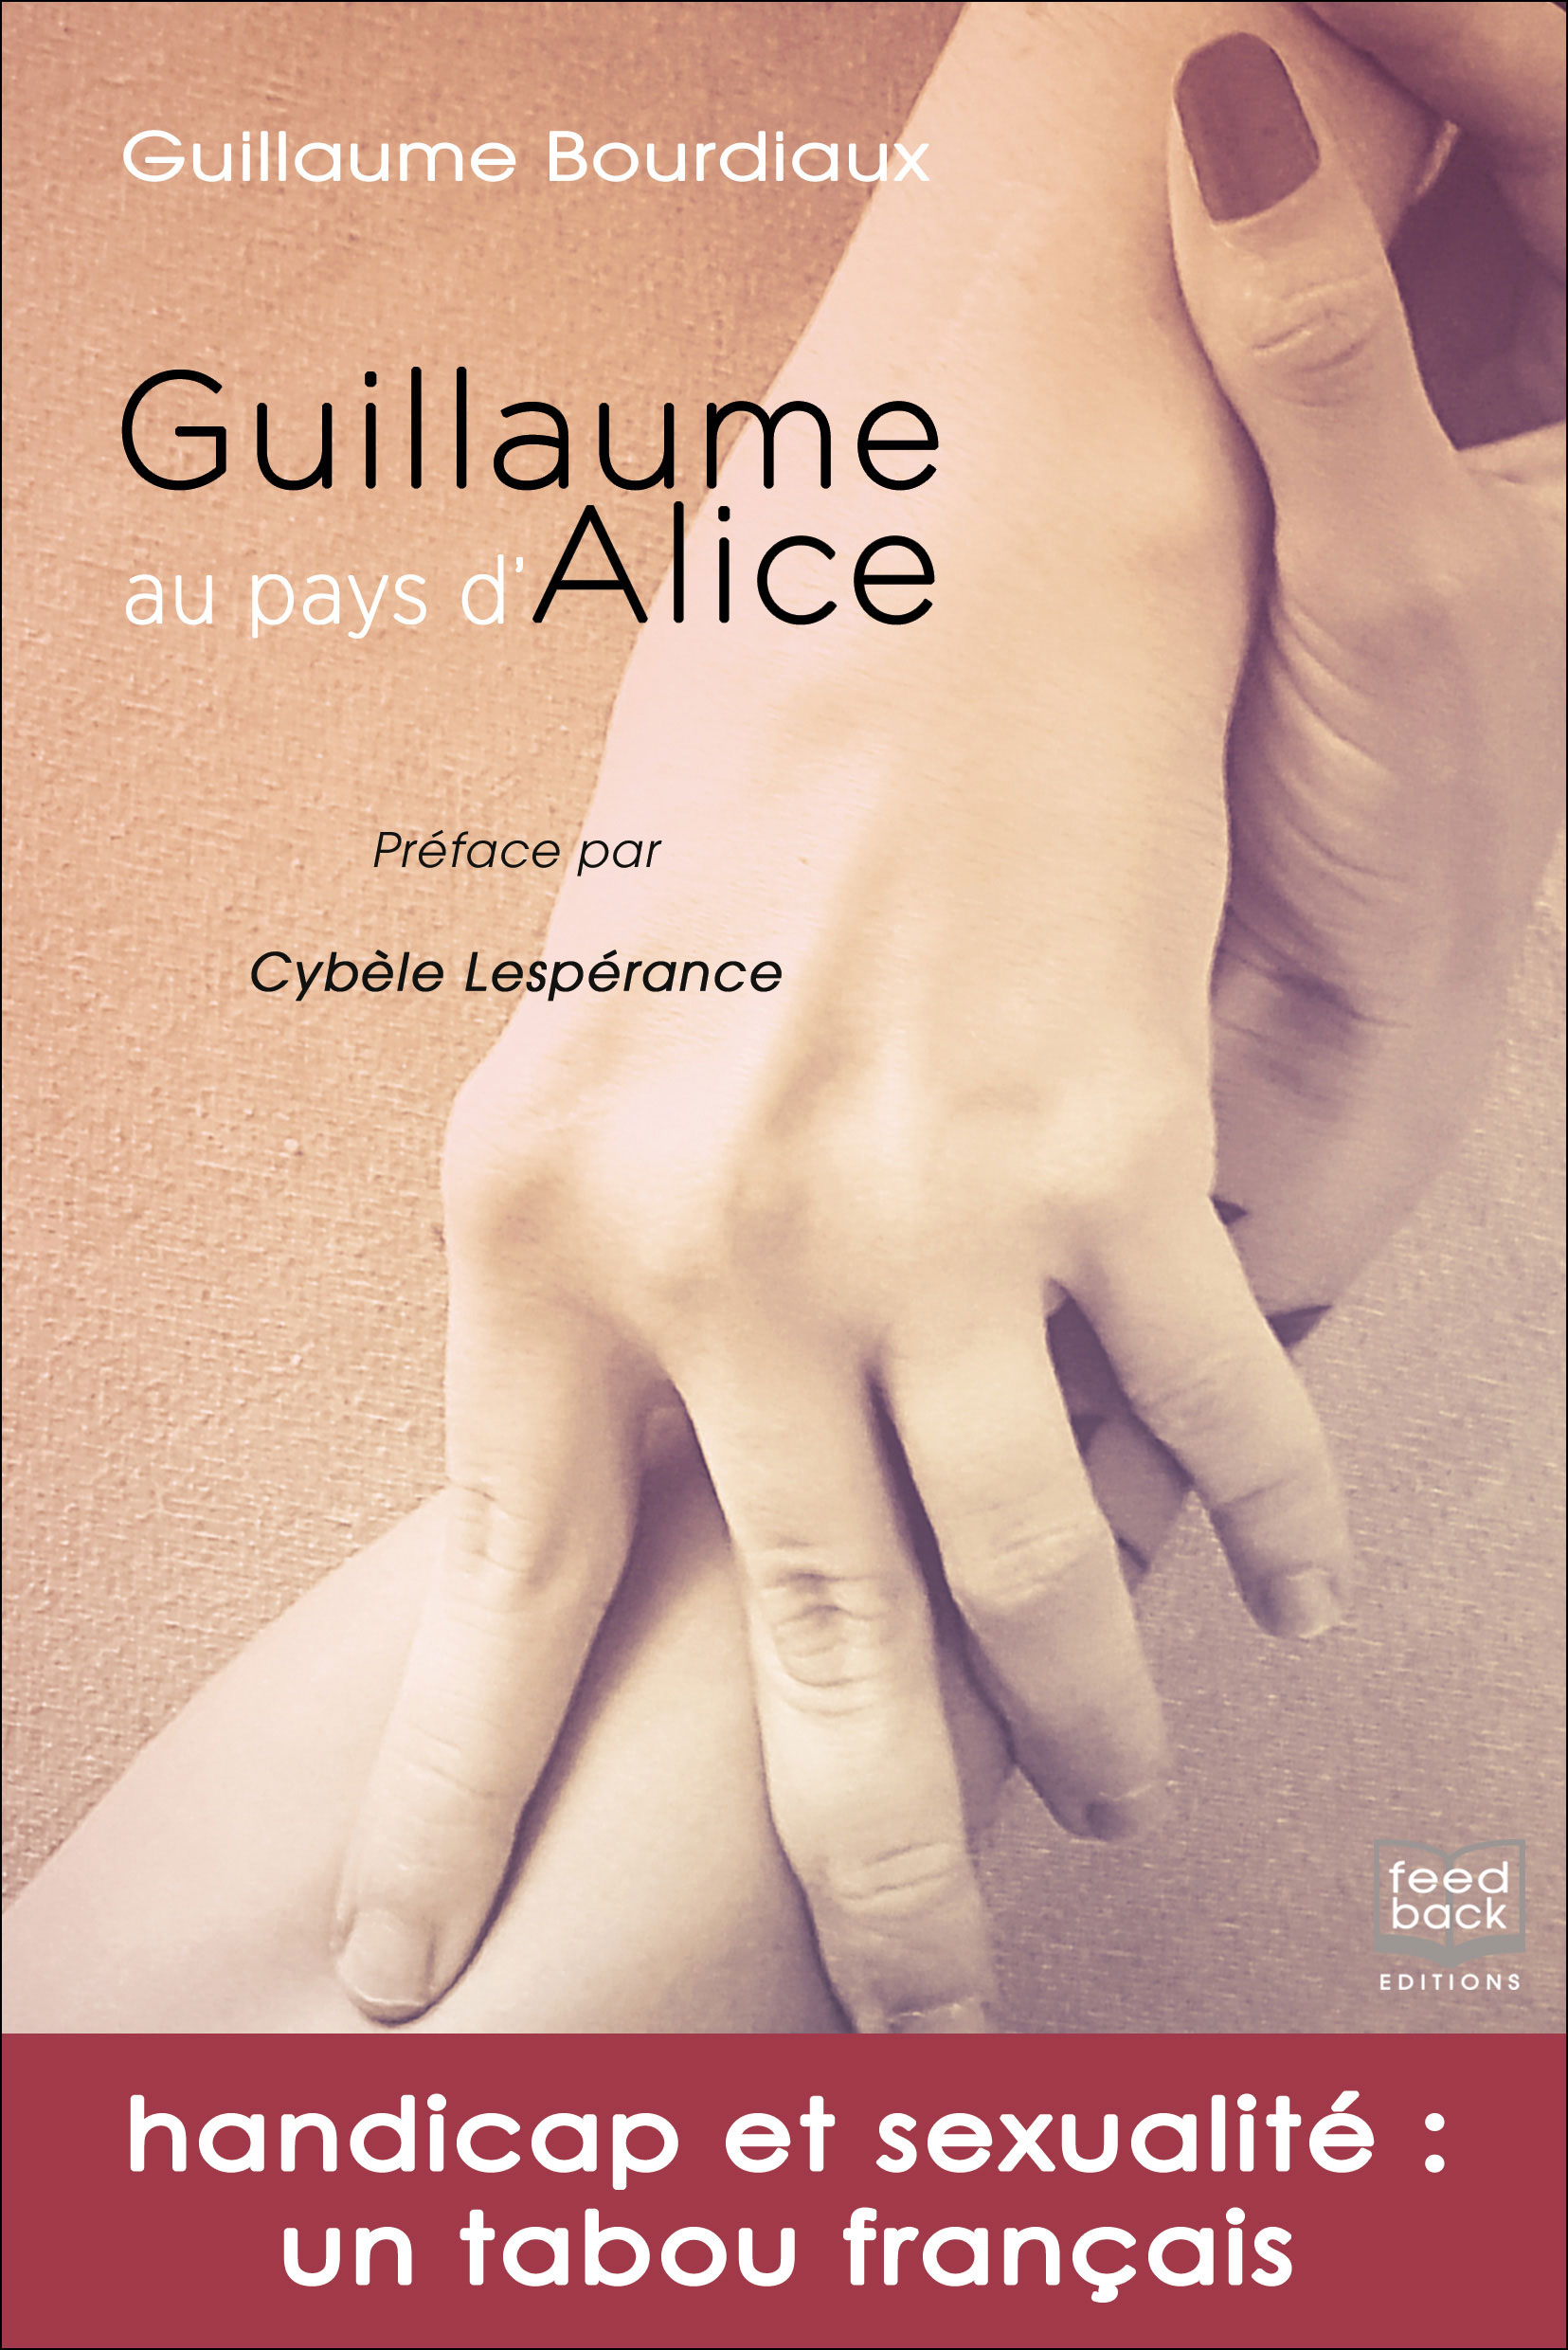 Guillaume au pays d'Alice - Guillaume Bourdiaux